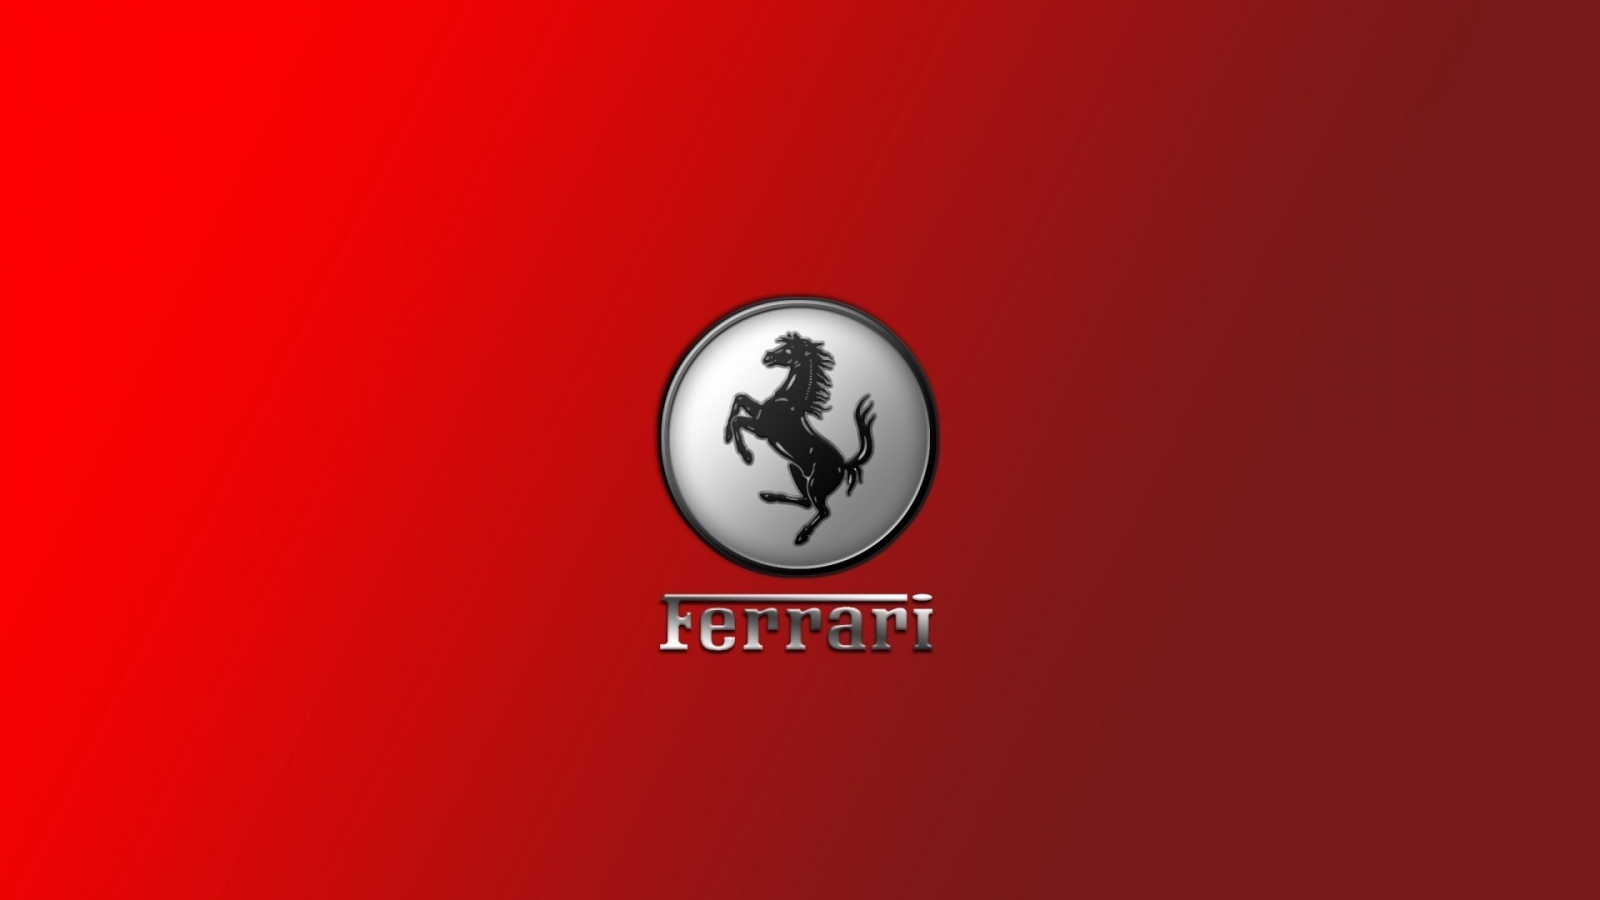 Gorgeous Ferrari Logo for 1600 x 900 HDTV resolution